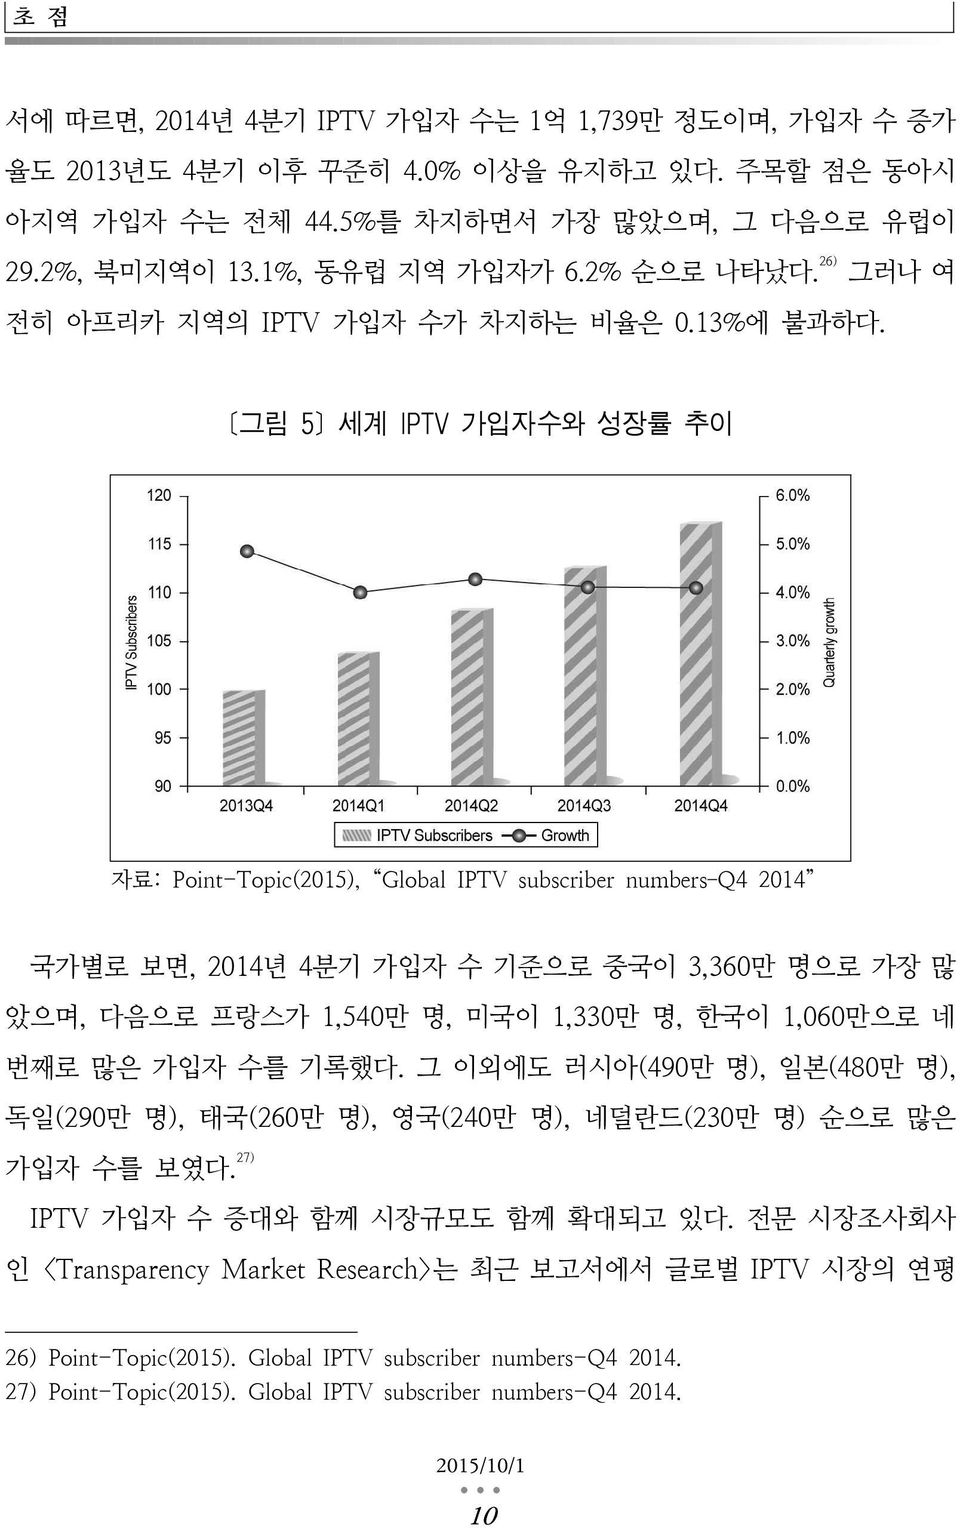 [그림 5] 세계 IPTV 가입자수와 성장률 추이 자료: Point-Topic(2015), Global IPTV subscriber numbers Q4 2014 국가별로 보면, 2014년 4분기 가입자 수 기준으로 중국이 3,360만 명으로 가장 많 았으며, 다음으로 프랑스가 1,540만 명, 미국이 1,330만 명, 한국이 1,060만으로 네 번째로